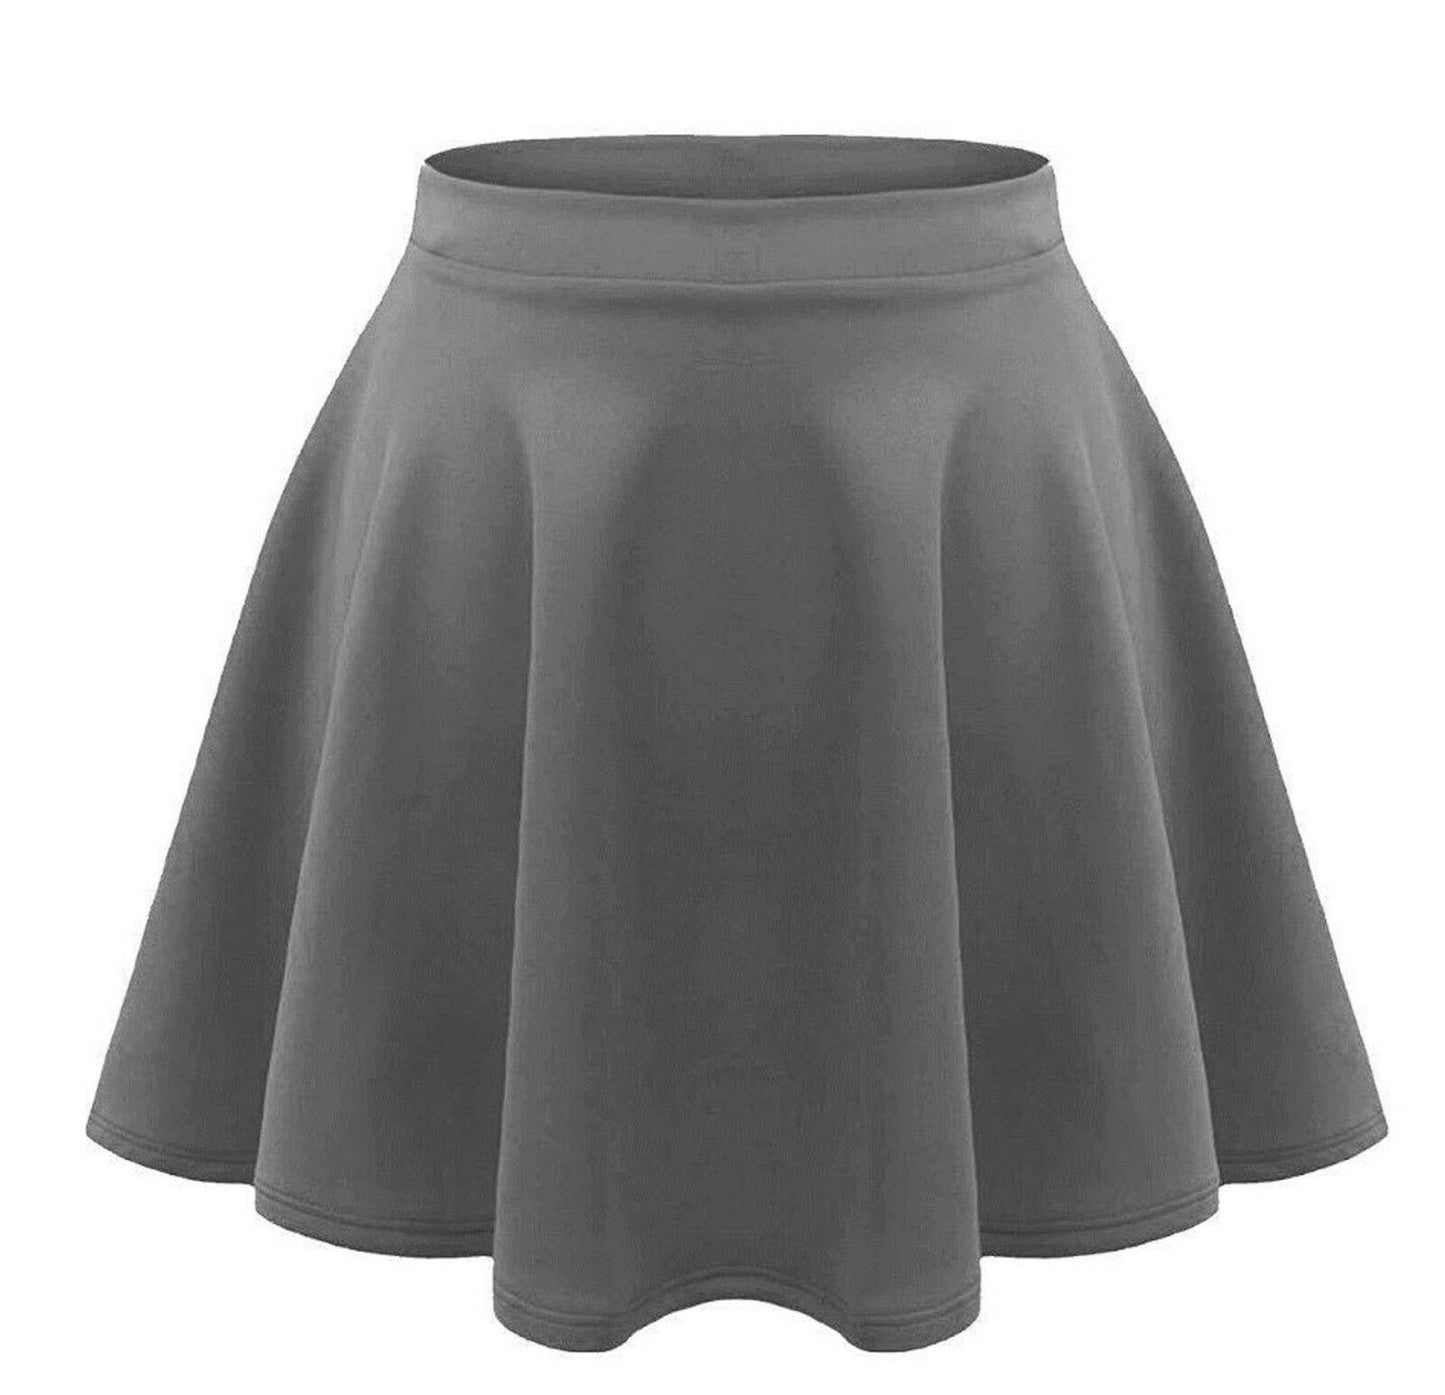 Girls Plain Grey Skater Skirt.